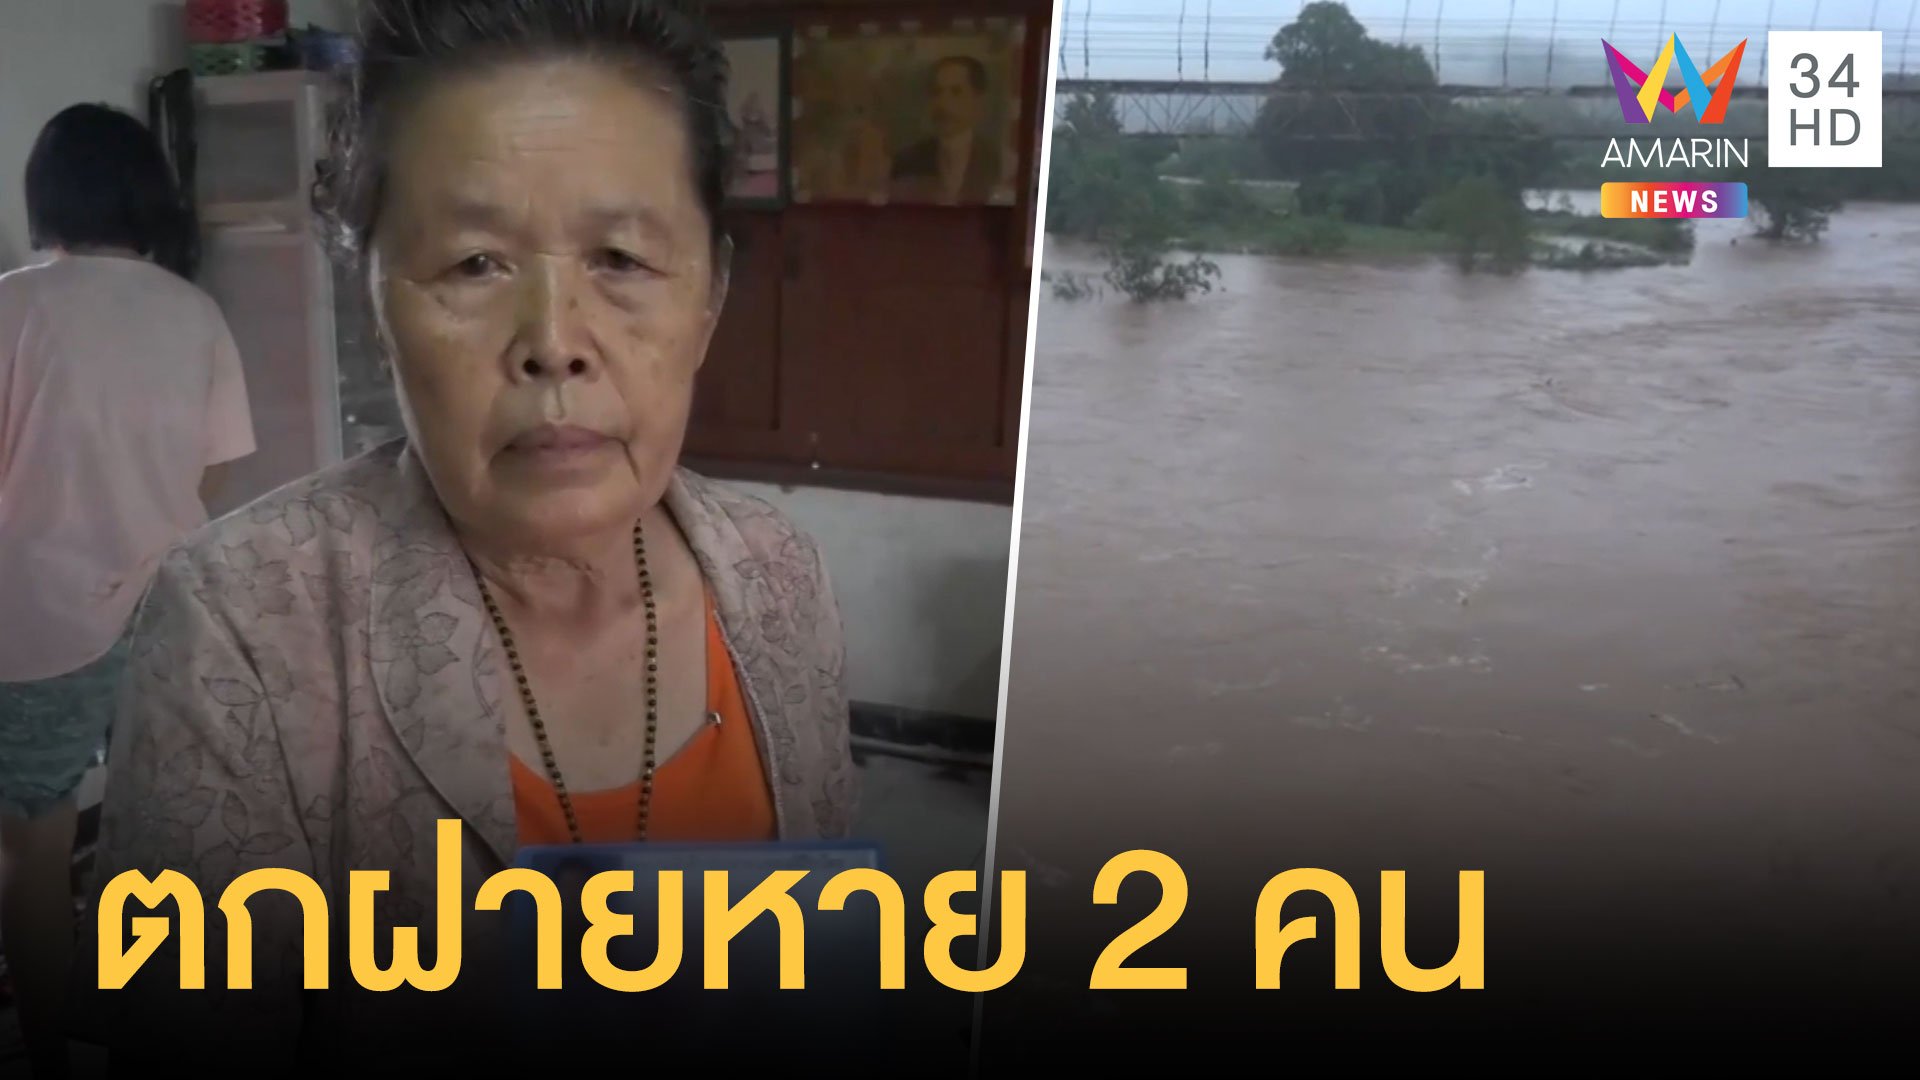 แม่ฮ่องสอนน้ำท่วม ต้นไม้หักดินถล่ม ซ้ำชาวบ้านตกฝายหาย 2 คน | ข่าวเที่ยงอมรินทร์ | 23 ส.ค. 63 | AMARIN TVHD34